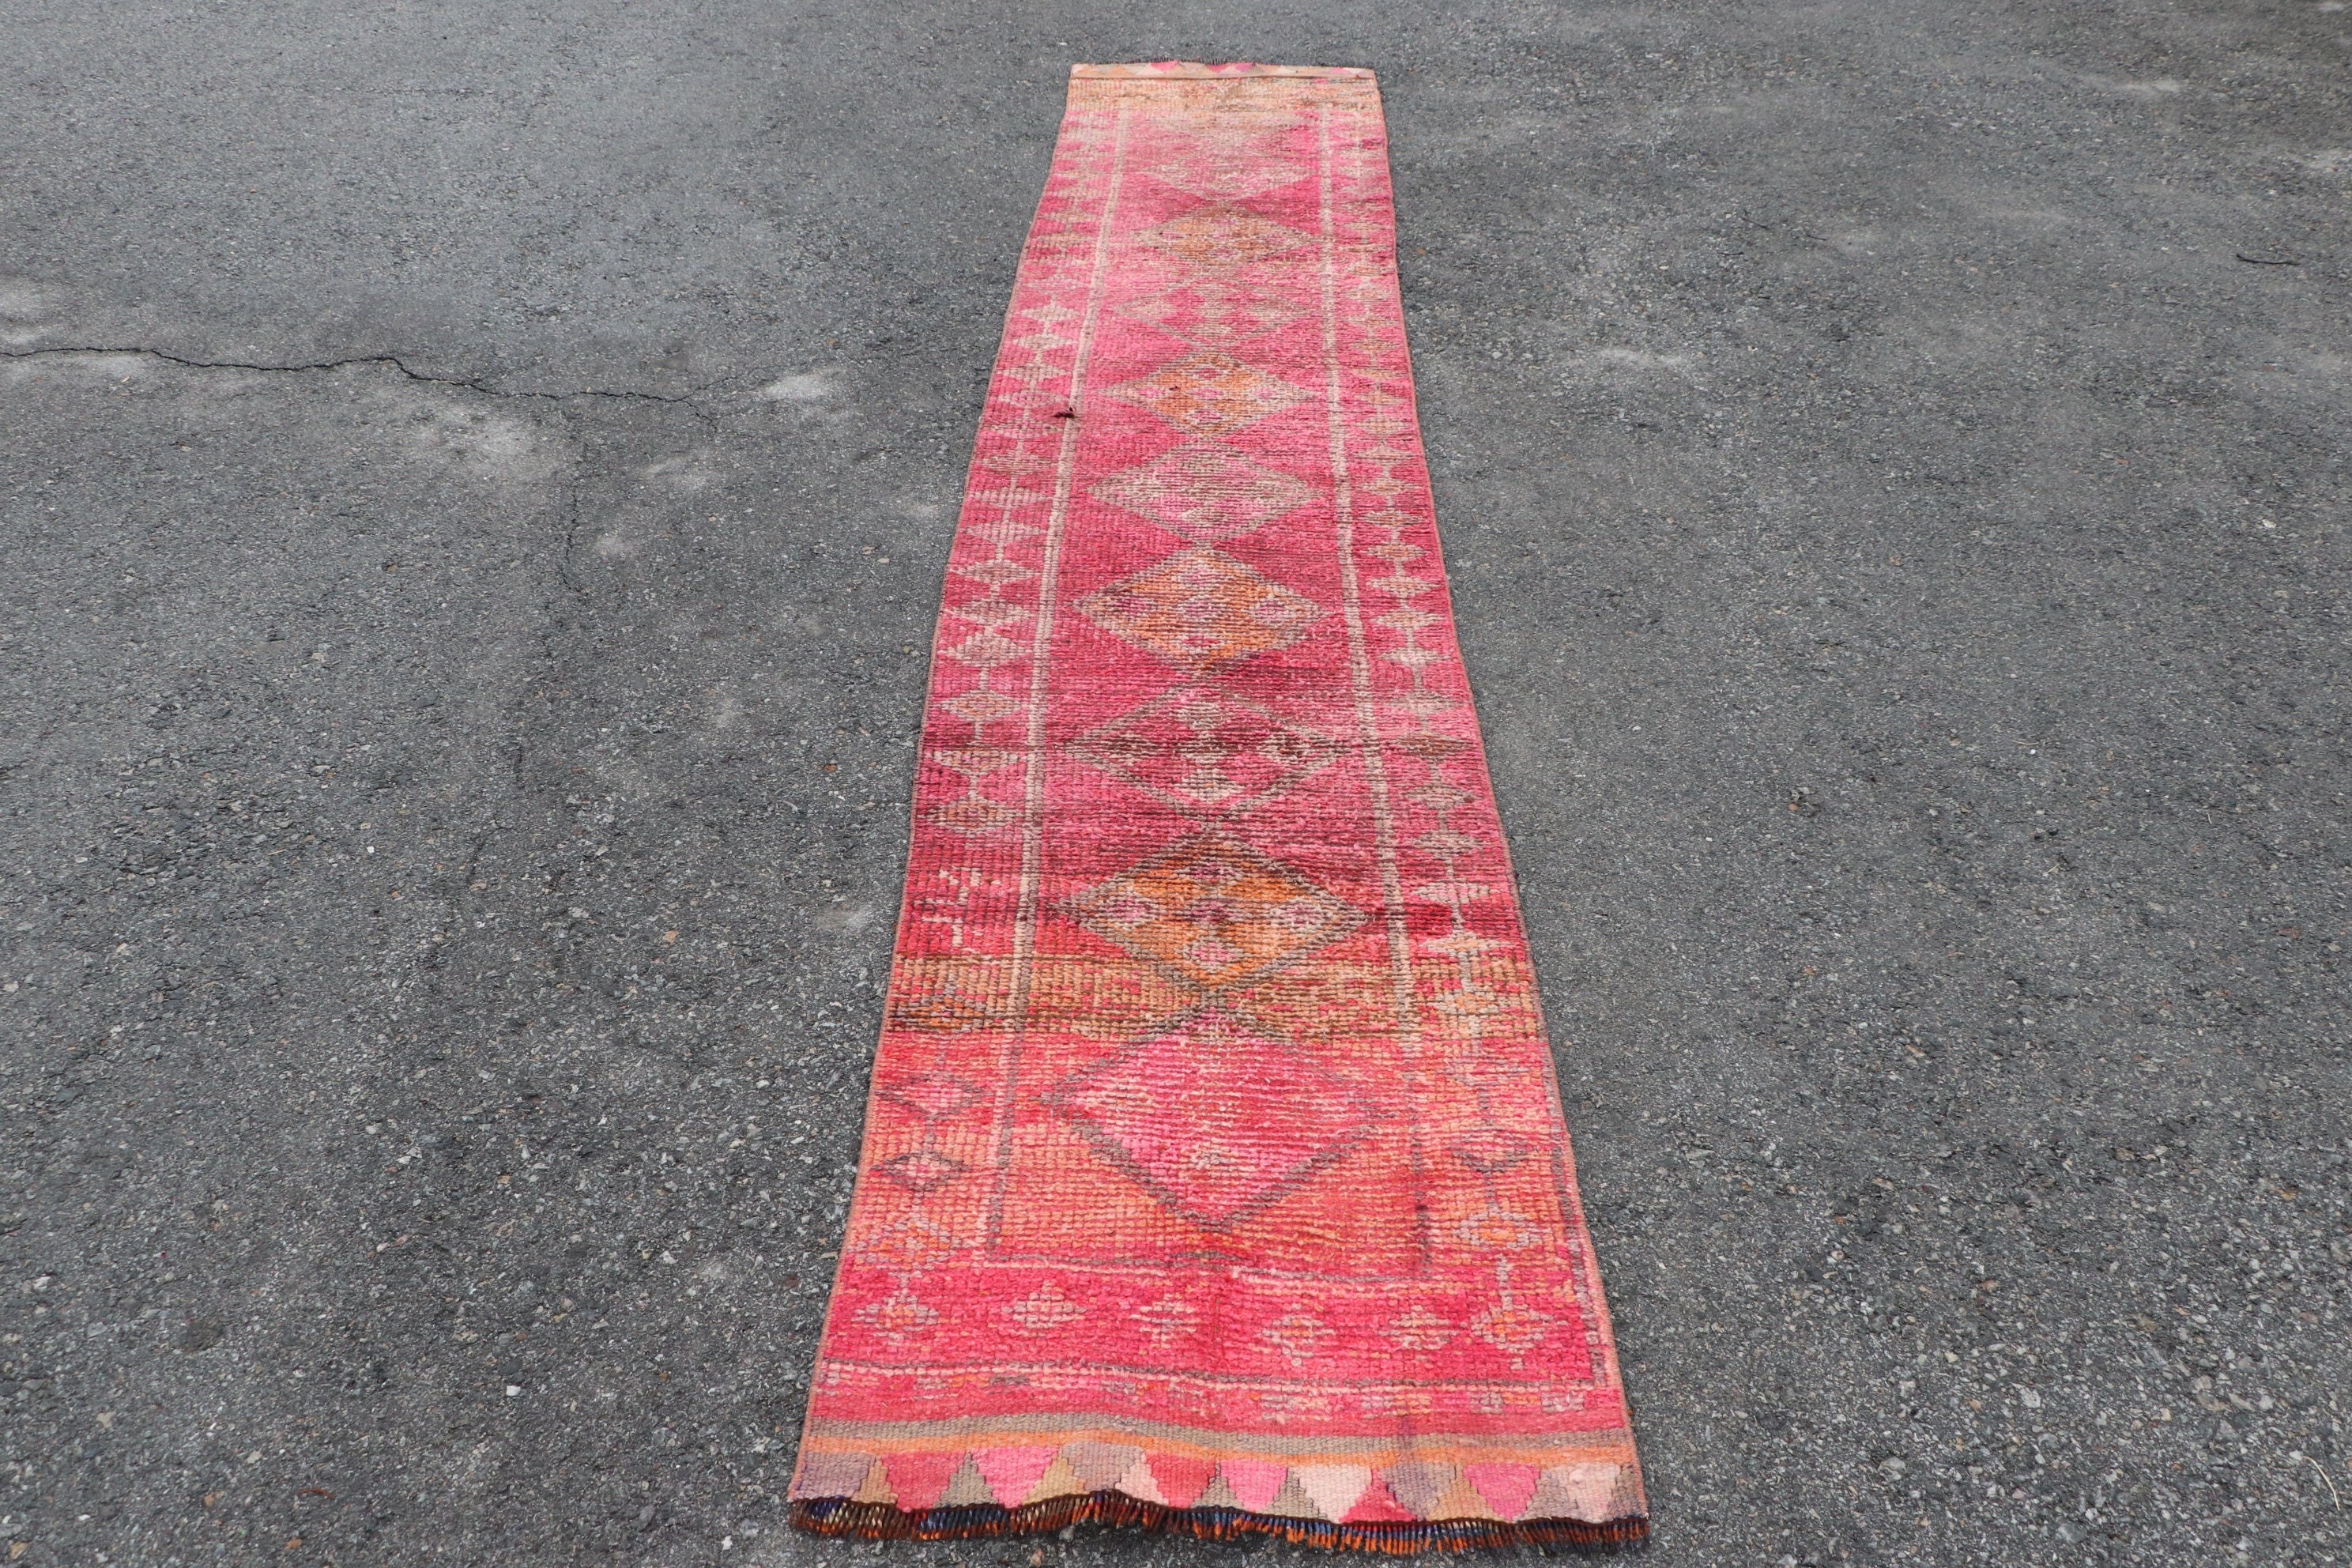 Vintage Rug, Antique Rug, Pink Oriental Rugs, 2.4x12.6 ft Runner Rugs, Stair Rug, Rugs for Kitchen, Corridor Rug, Wool Rug, Turkish Rug